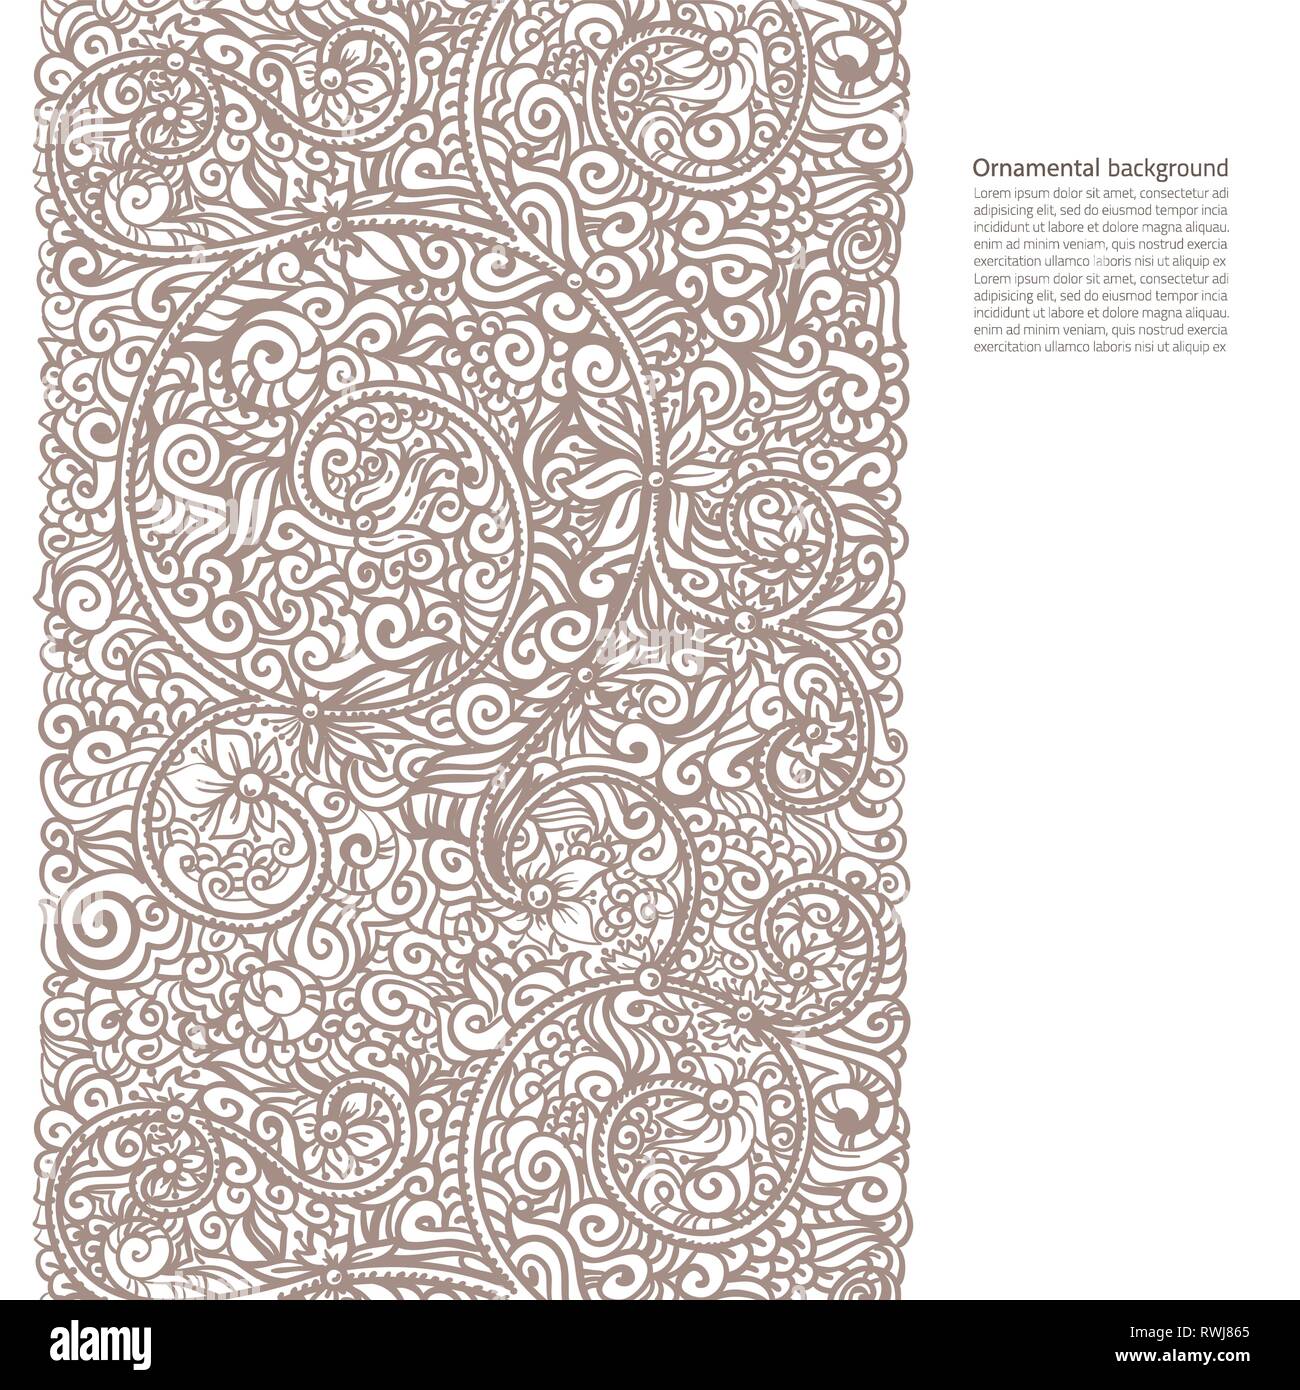 Vector background ornementé avec copie espace, coffee brown ornement isolé sur la page blanche Illustration de Vecteur